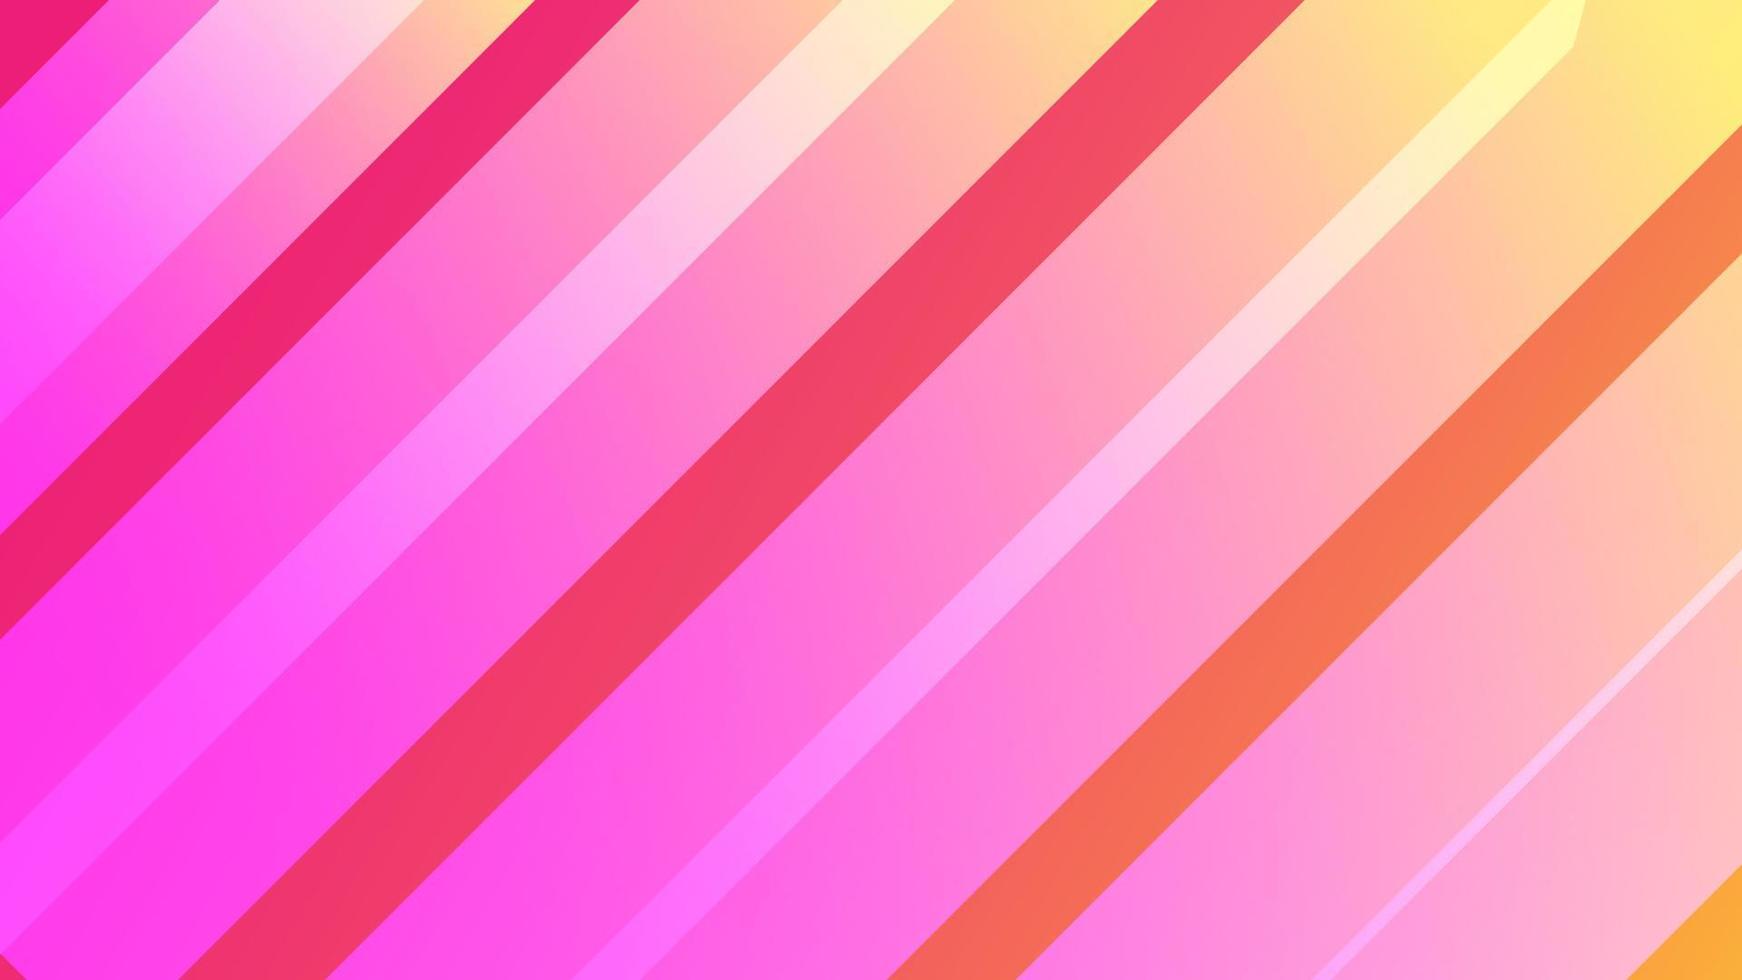 abstrakte moderne bunte rosa und gelbe Steigungshintergrundillustration, vervollkommnen für Tapete, Hintergrund, Postkarte, Hintergrund vektor